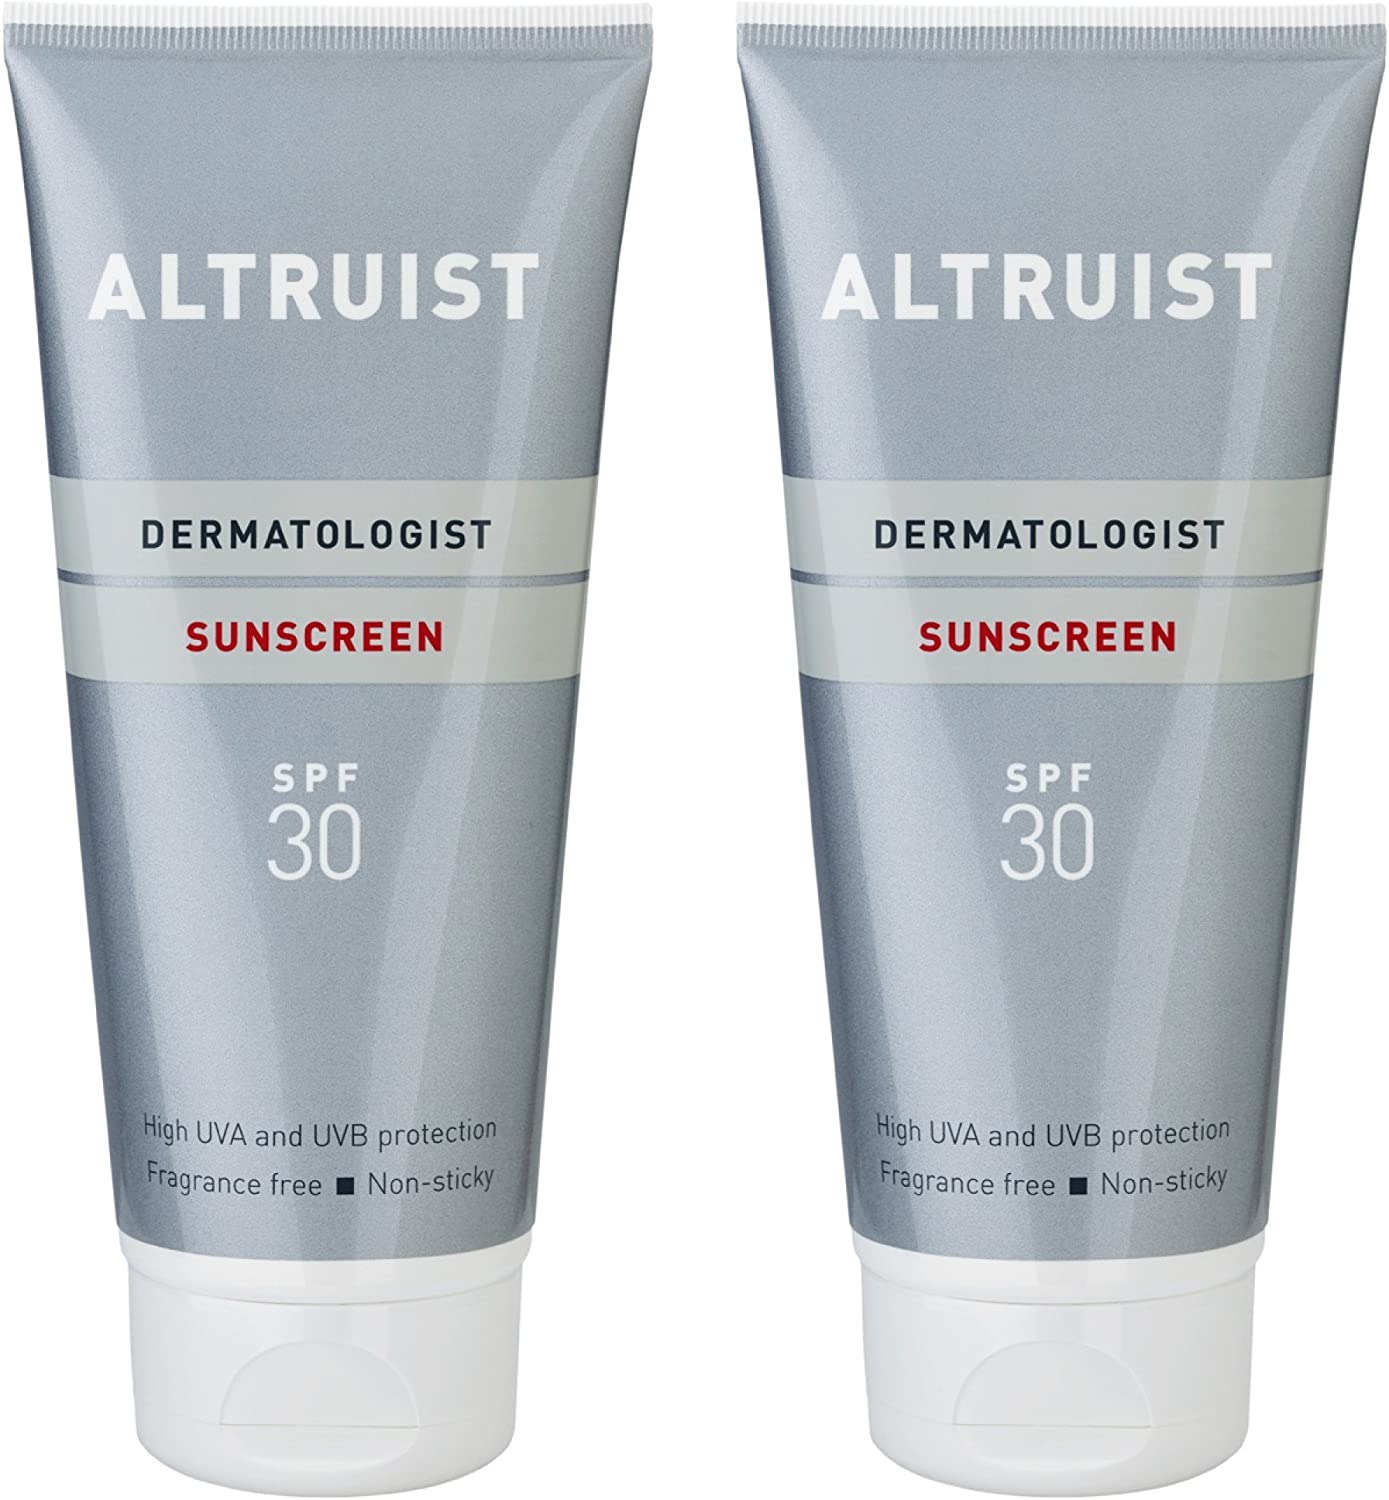 ALTRUIST. Dermatologist Sunscreen SPF 30 â Superior 5-star UVA 